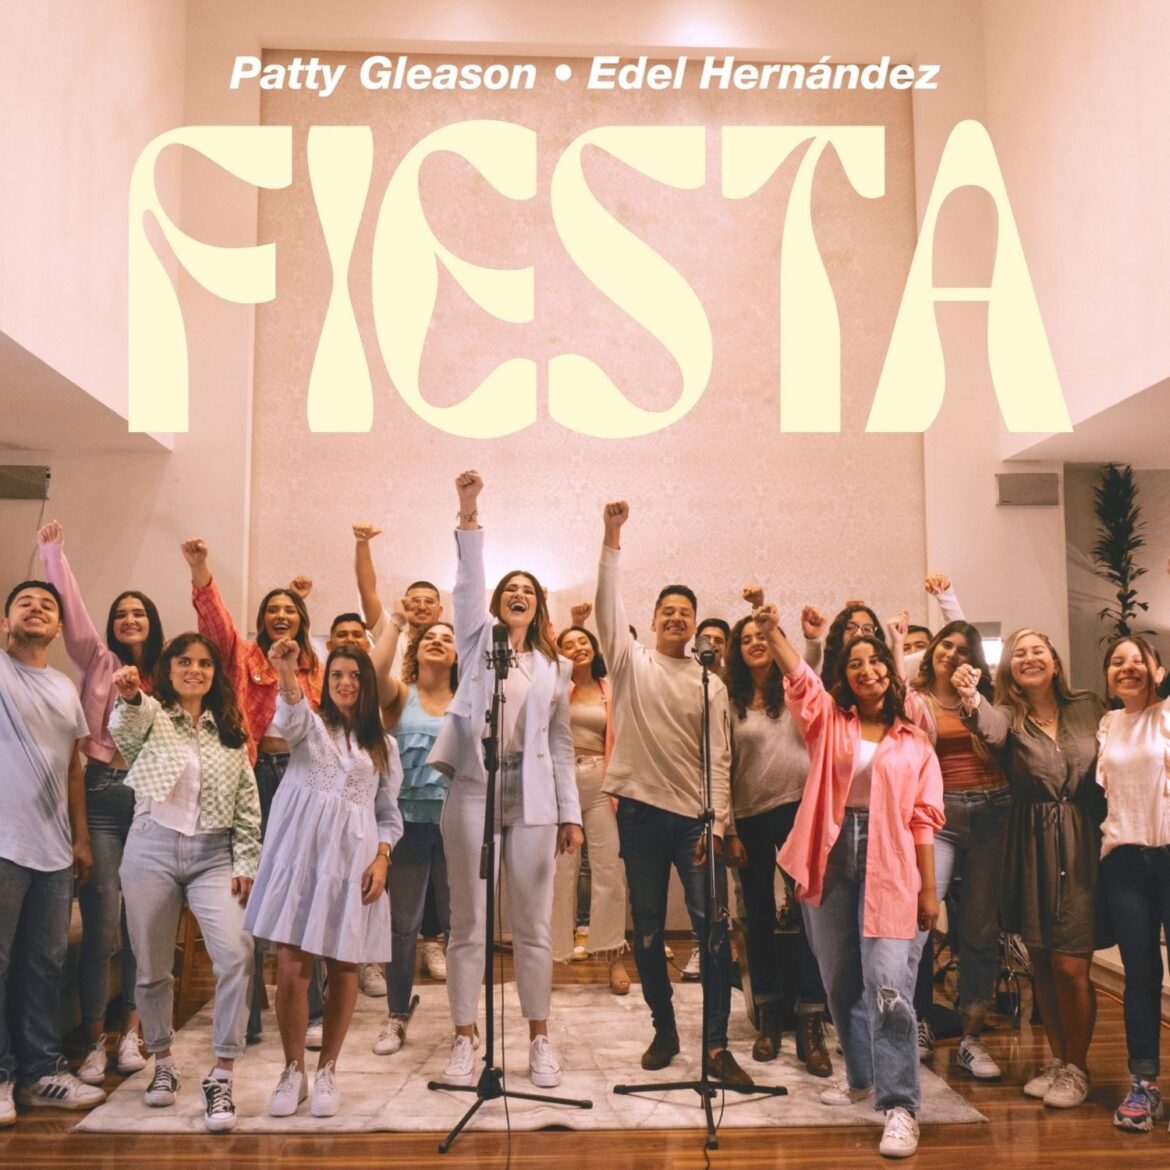 Patty Gleason nos invita con su nueva canción a hacer una “Fiesta” y celebrar a Jesús